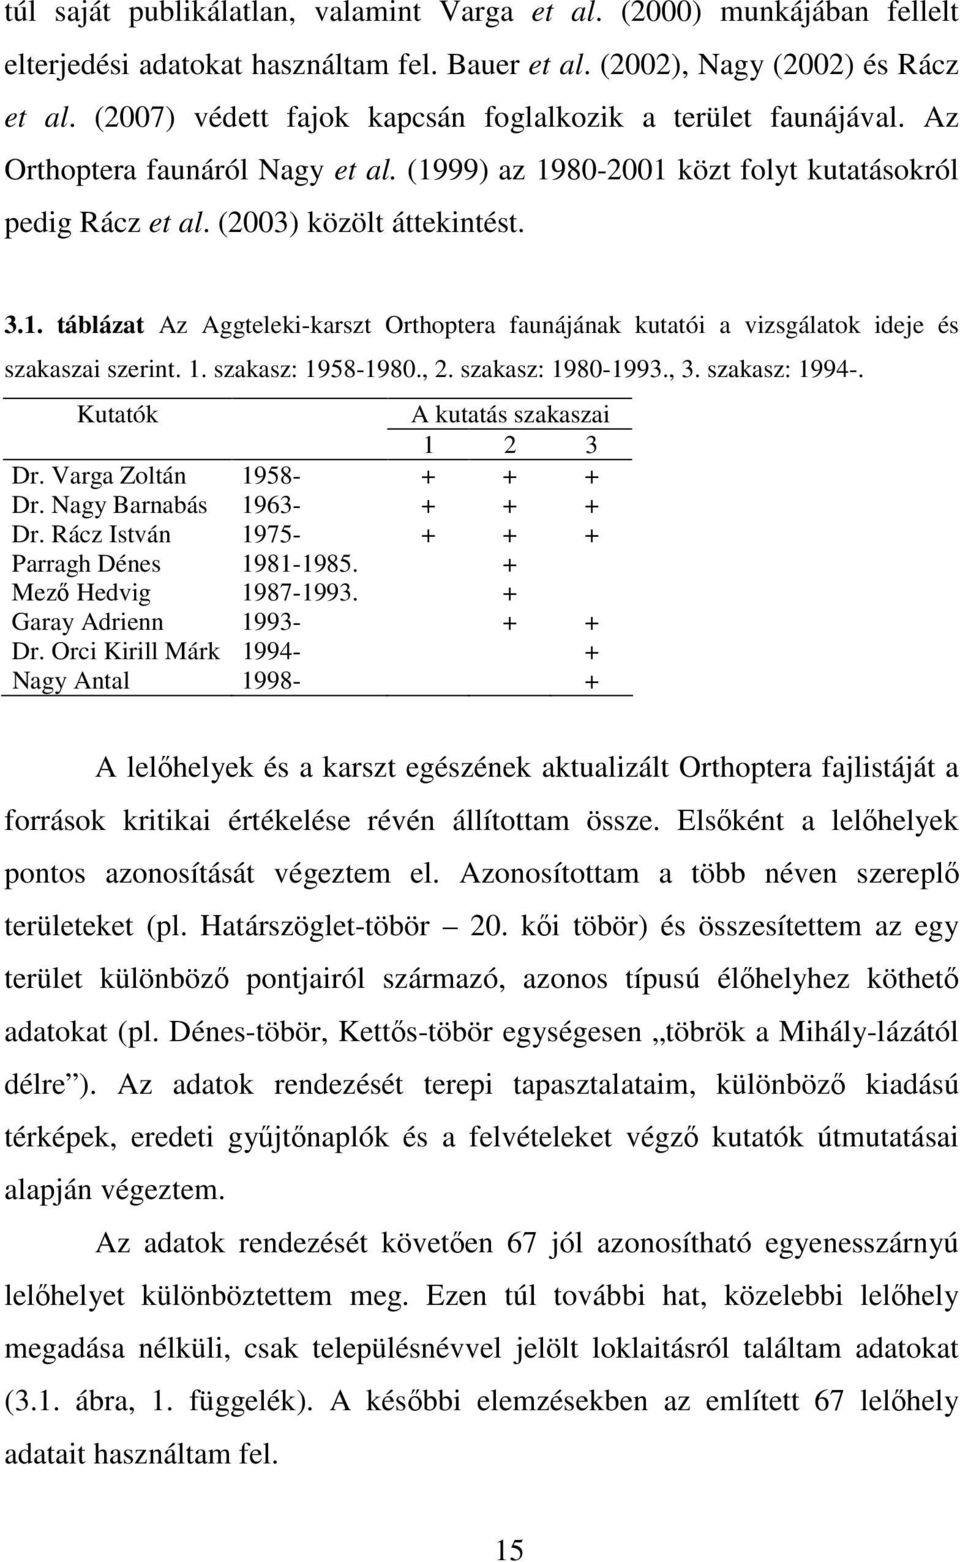 99) az 1980-2001 közt folyt kutatásokról pedig Rácz et al. (2003) közölt áttekintést. 3.1. táblázat Az Aggteleki-karszt Orthoptera faunájának kutatói a vizsgálatok ideje és szakaszai szerint. 1. szakasz: 1958-1980.